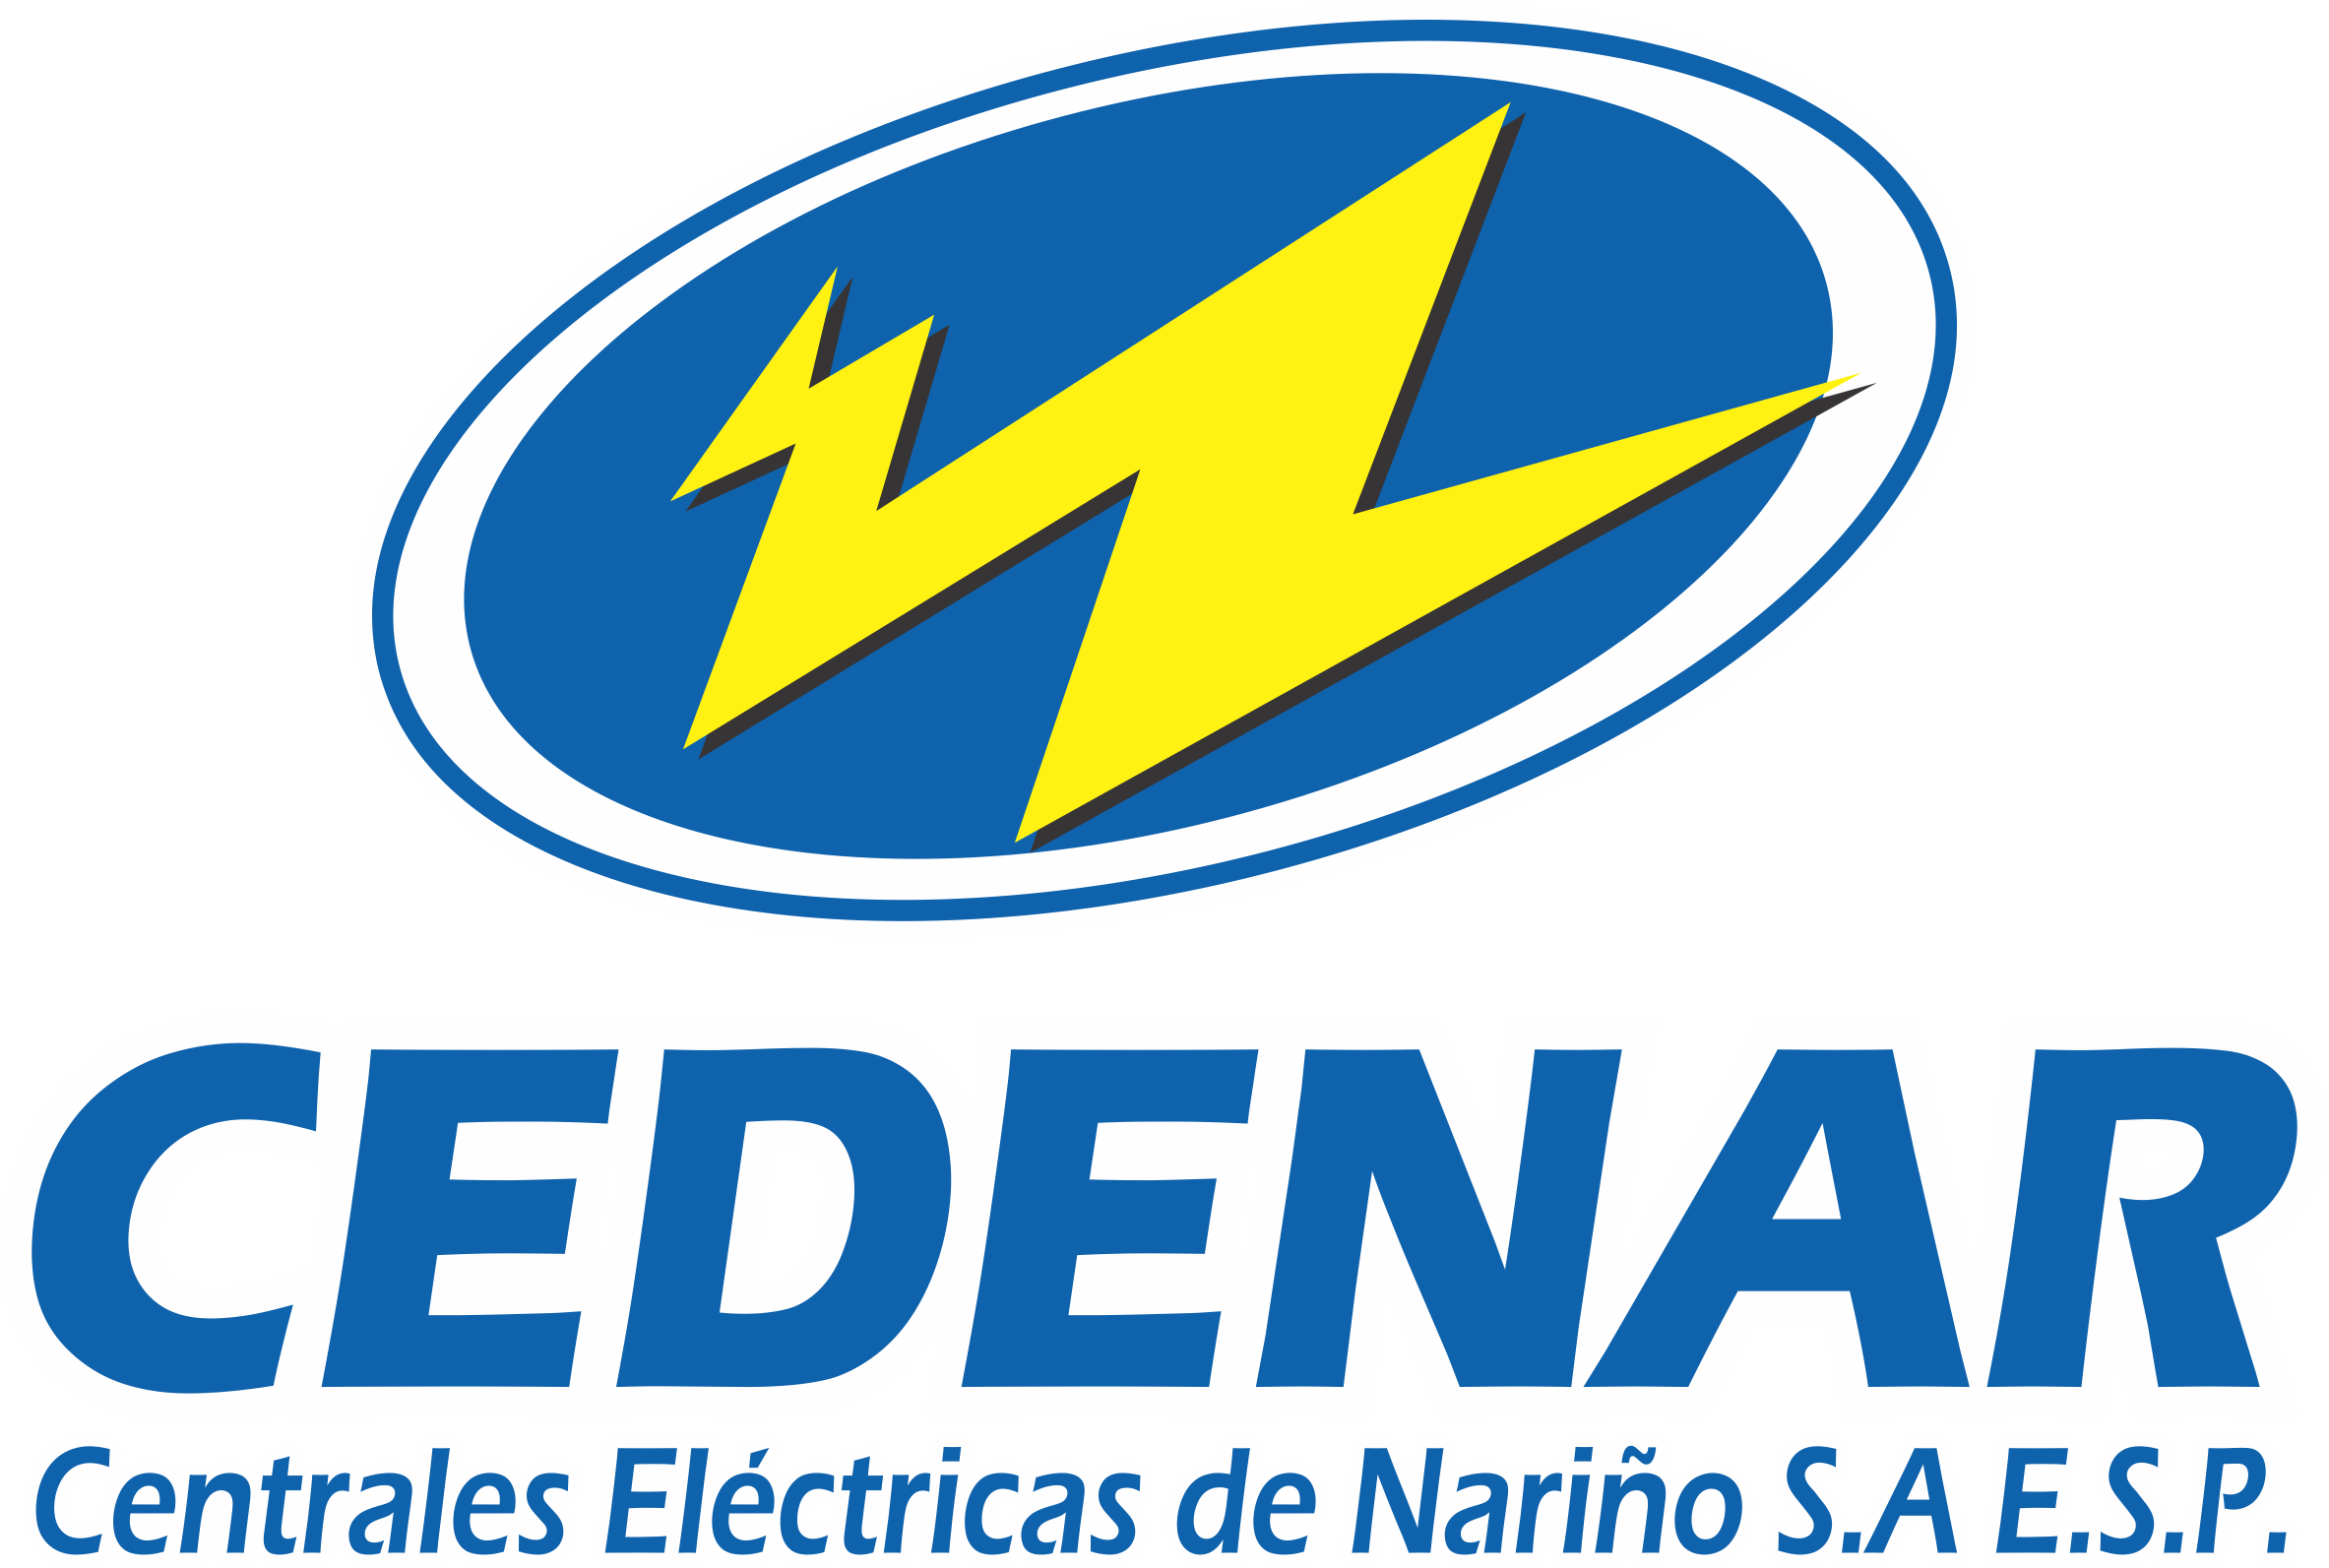 Centrales Electricas de Nariño S.A. E.S.P. - Cedenar S.A. E.S.P.